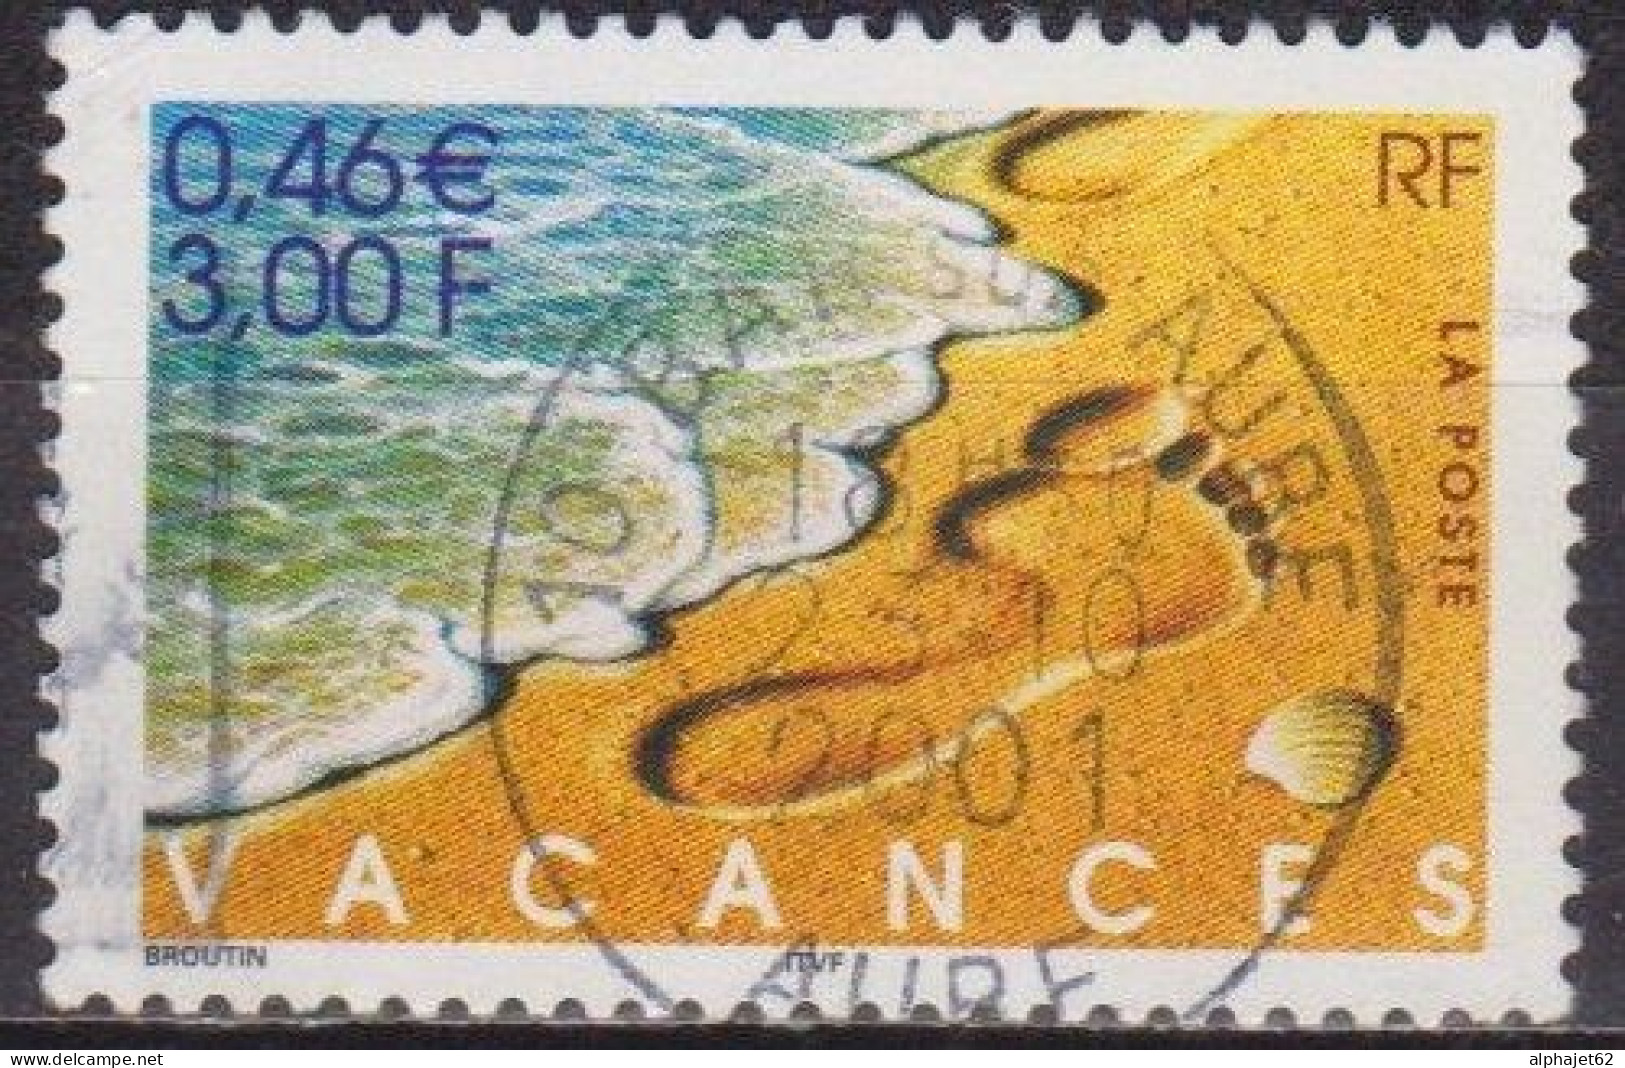 Vacances - FRANCE - Pas Dans Le Sable, Mer - N° 3399 - 2001 - Oblitérés